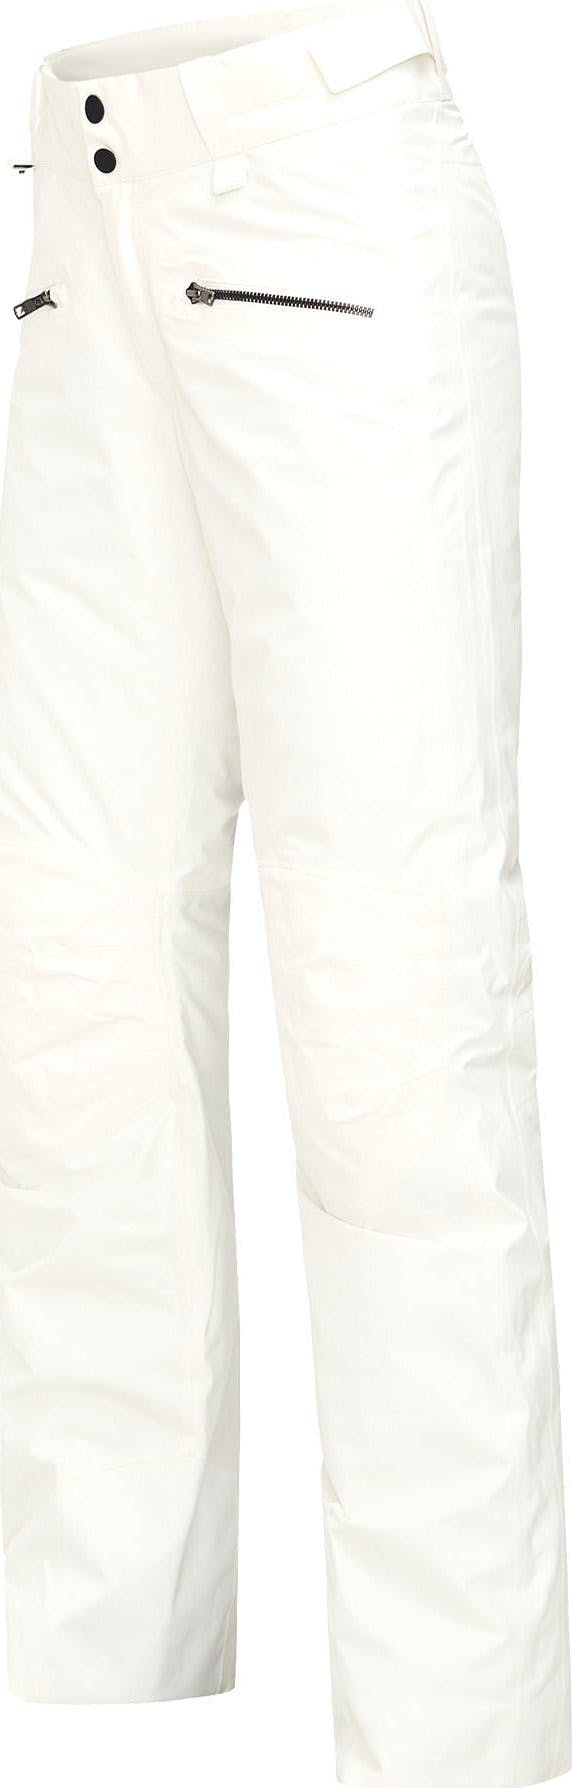 Numéro de l'image de la galerie de produits 2 pour le produit Pantalon de ski Peakville GTX - Femme